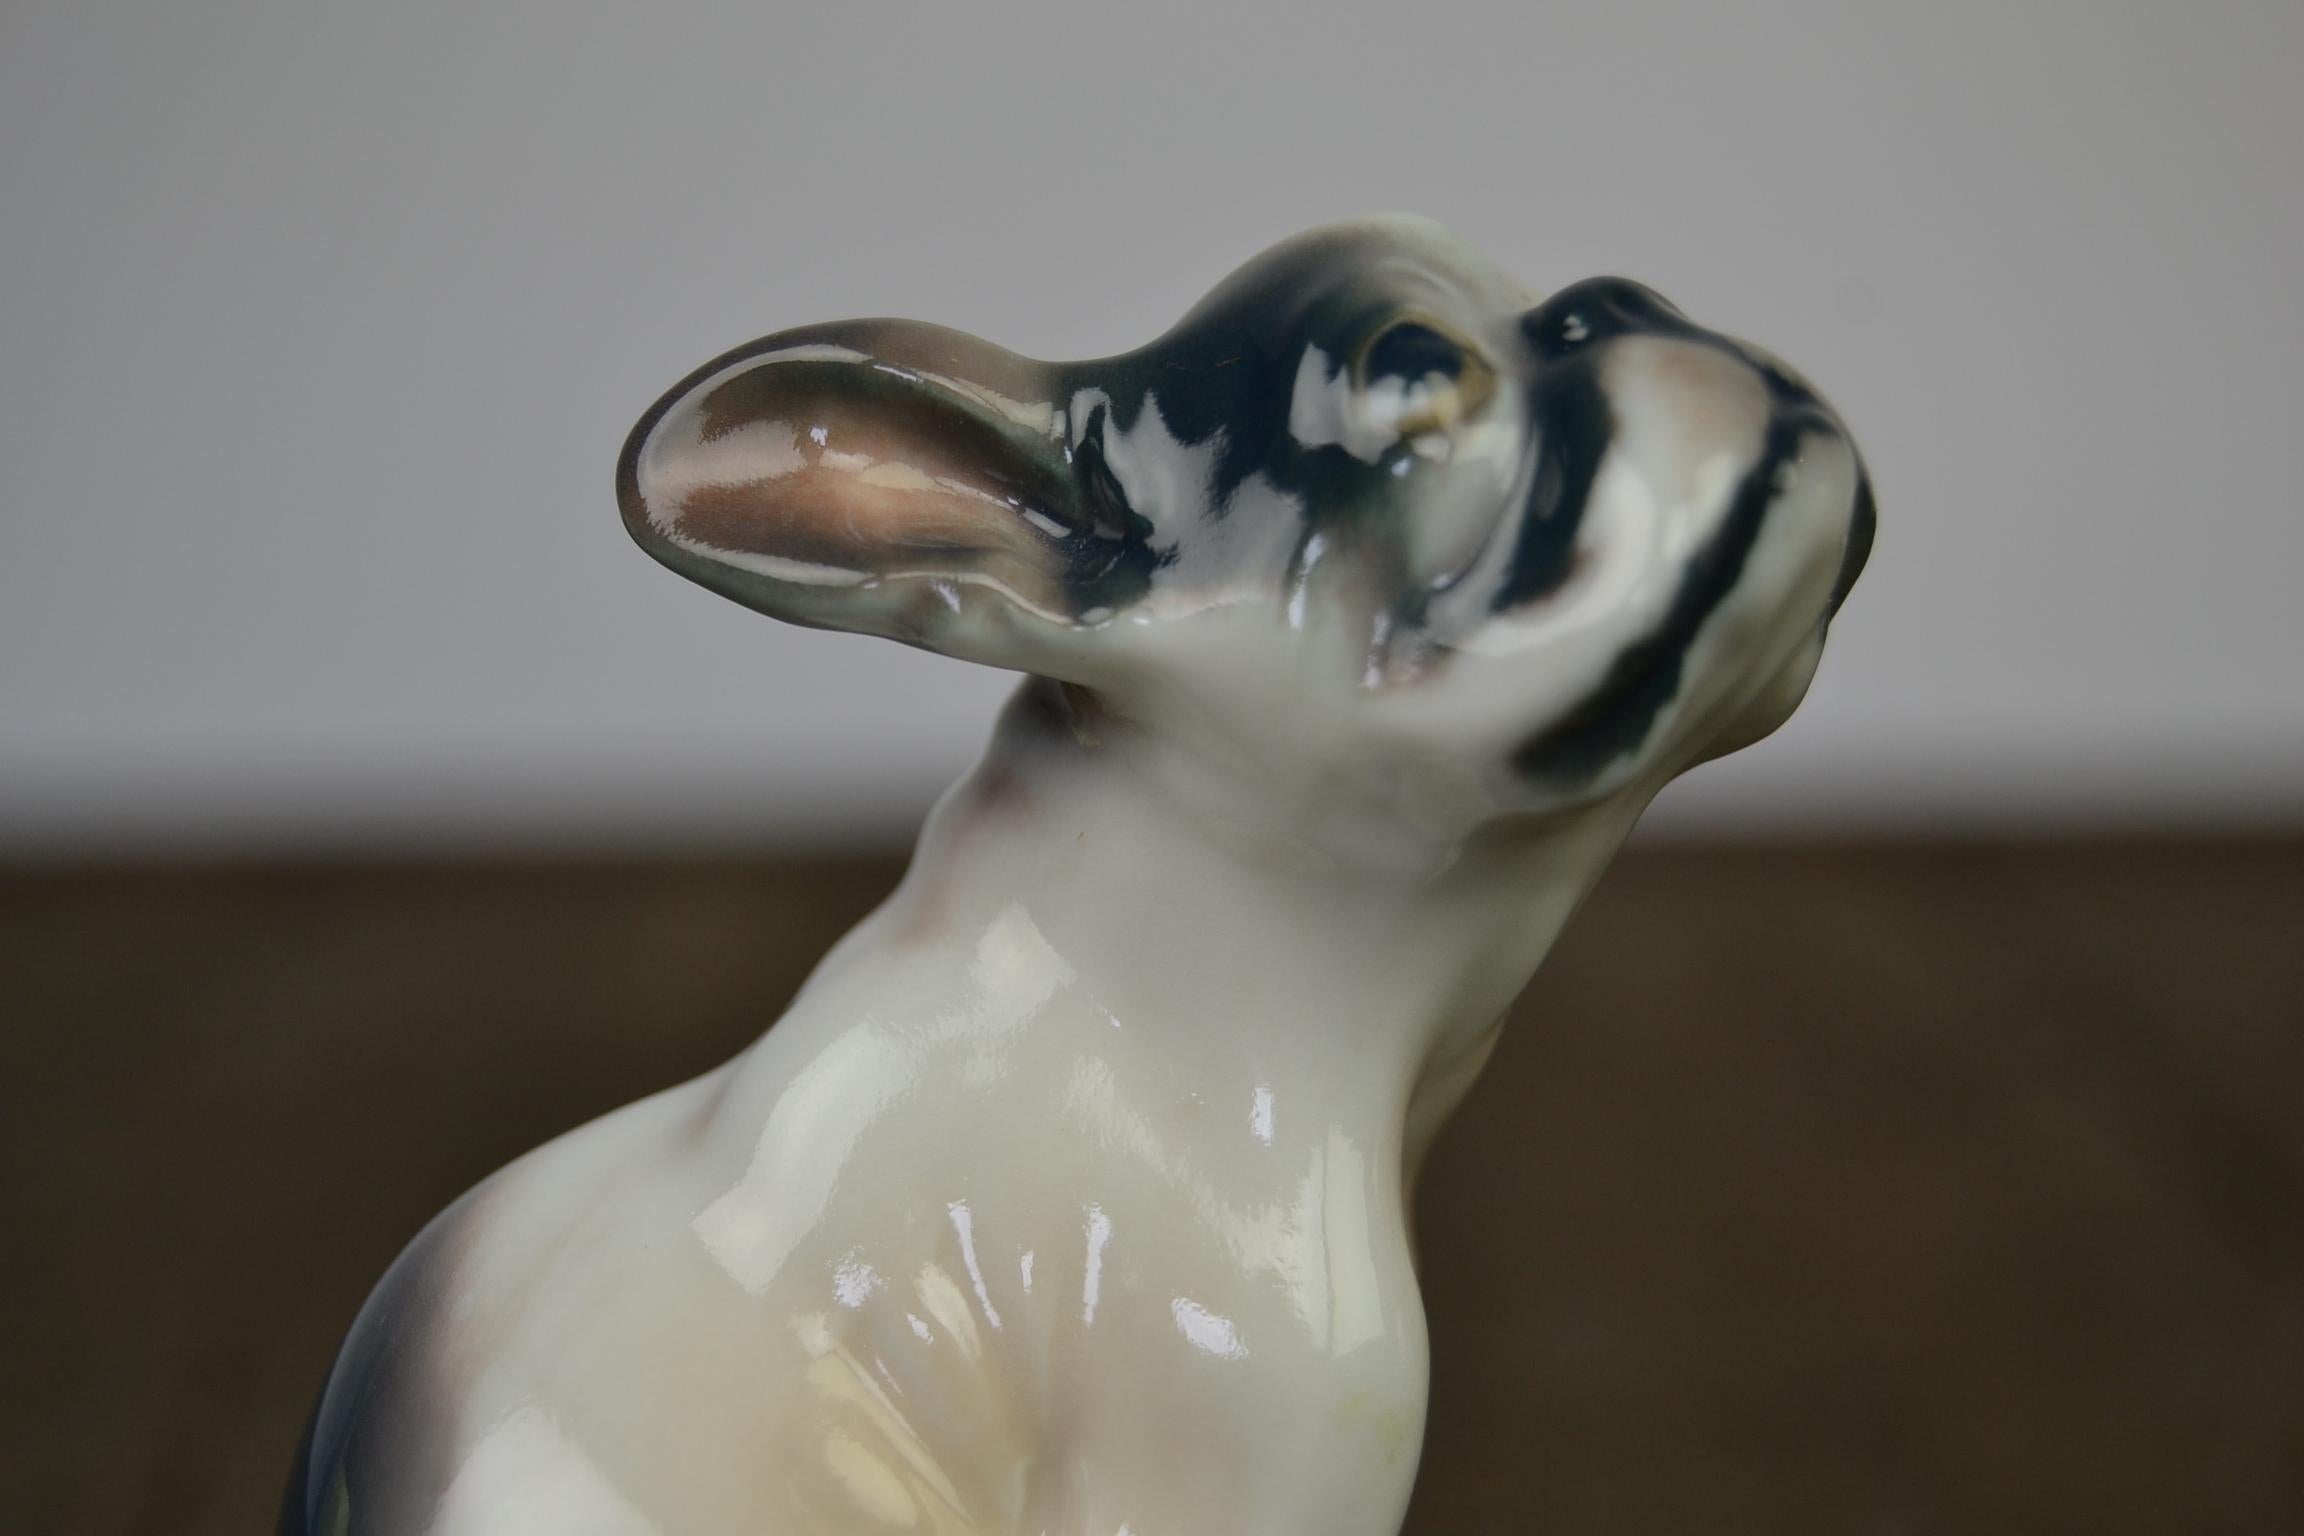 Skulptur eines Bulldoggenwelpen aus Porzellan von Dahl Jensen, Dänemark.
Diese hochwertige Porzellan-Hundefigur mit glasierter Bemalung datiert
aus den 1930er Jahren.
Sie wurde von dem dänischen Bildhauer Dahl Jensen für Copenhagen Denmark